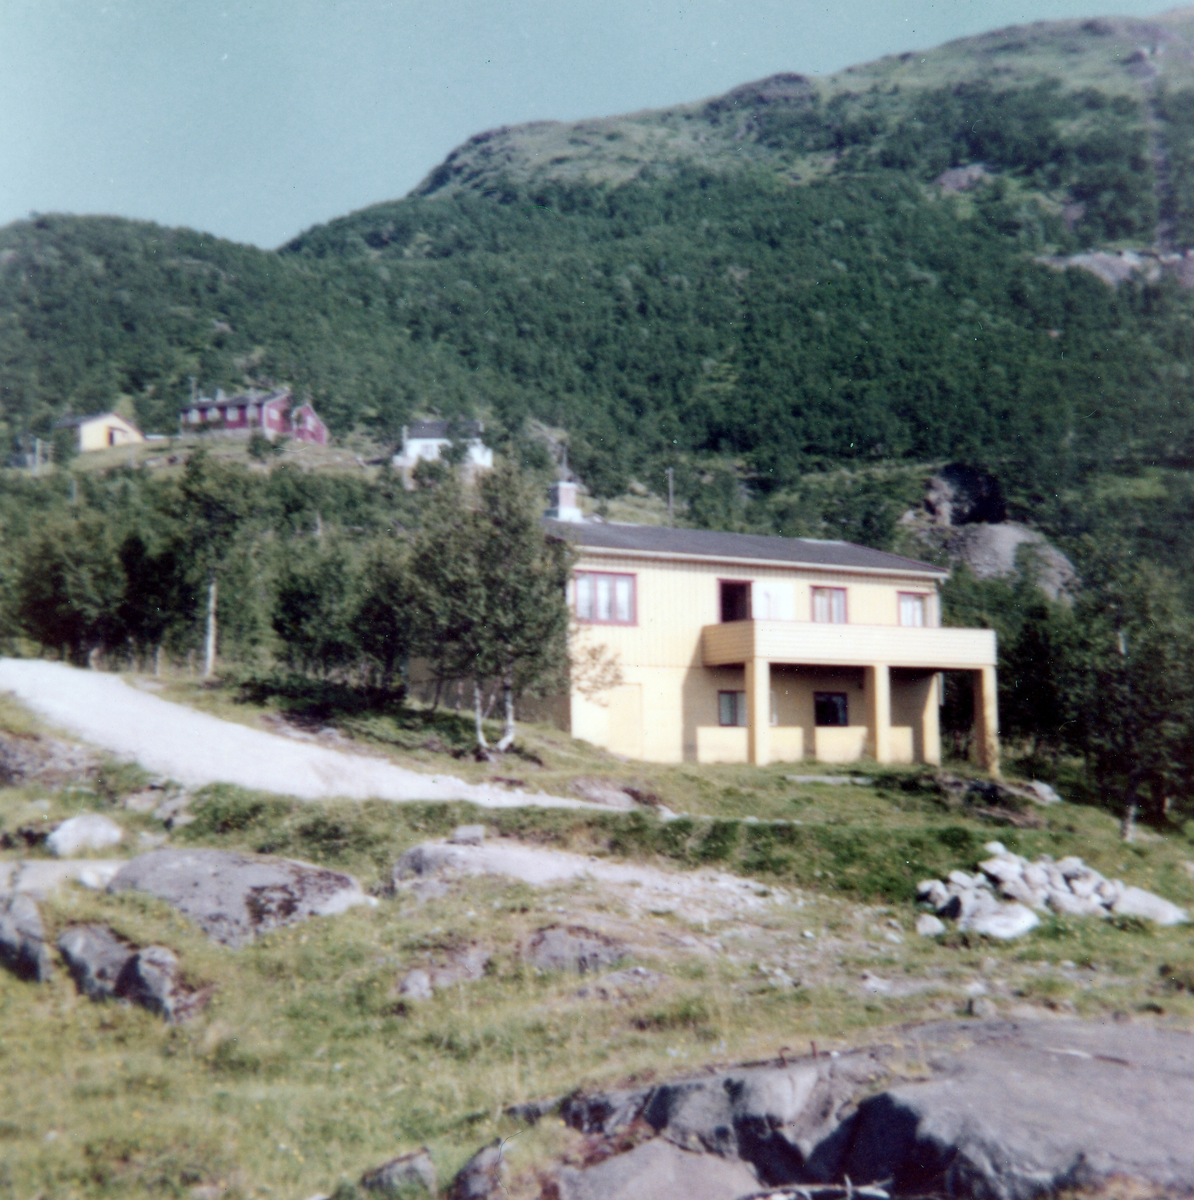 Hus og bygninger ved det gamle grafittverket på Skaland